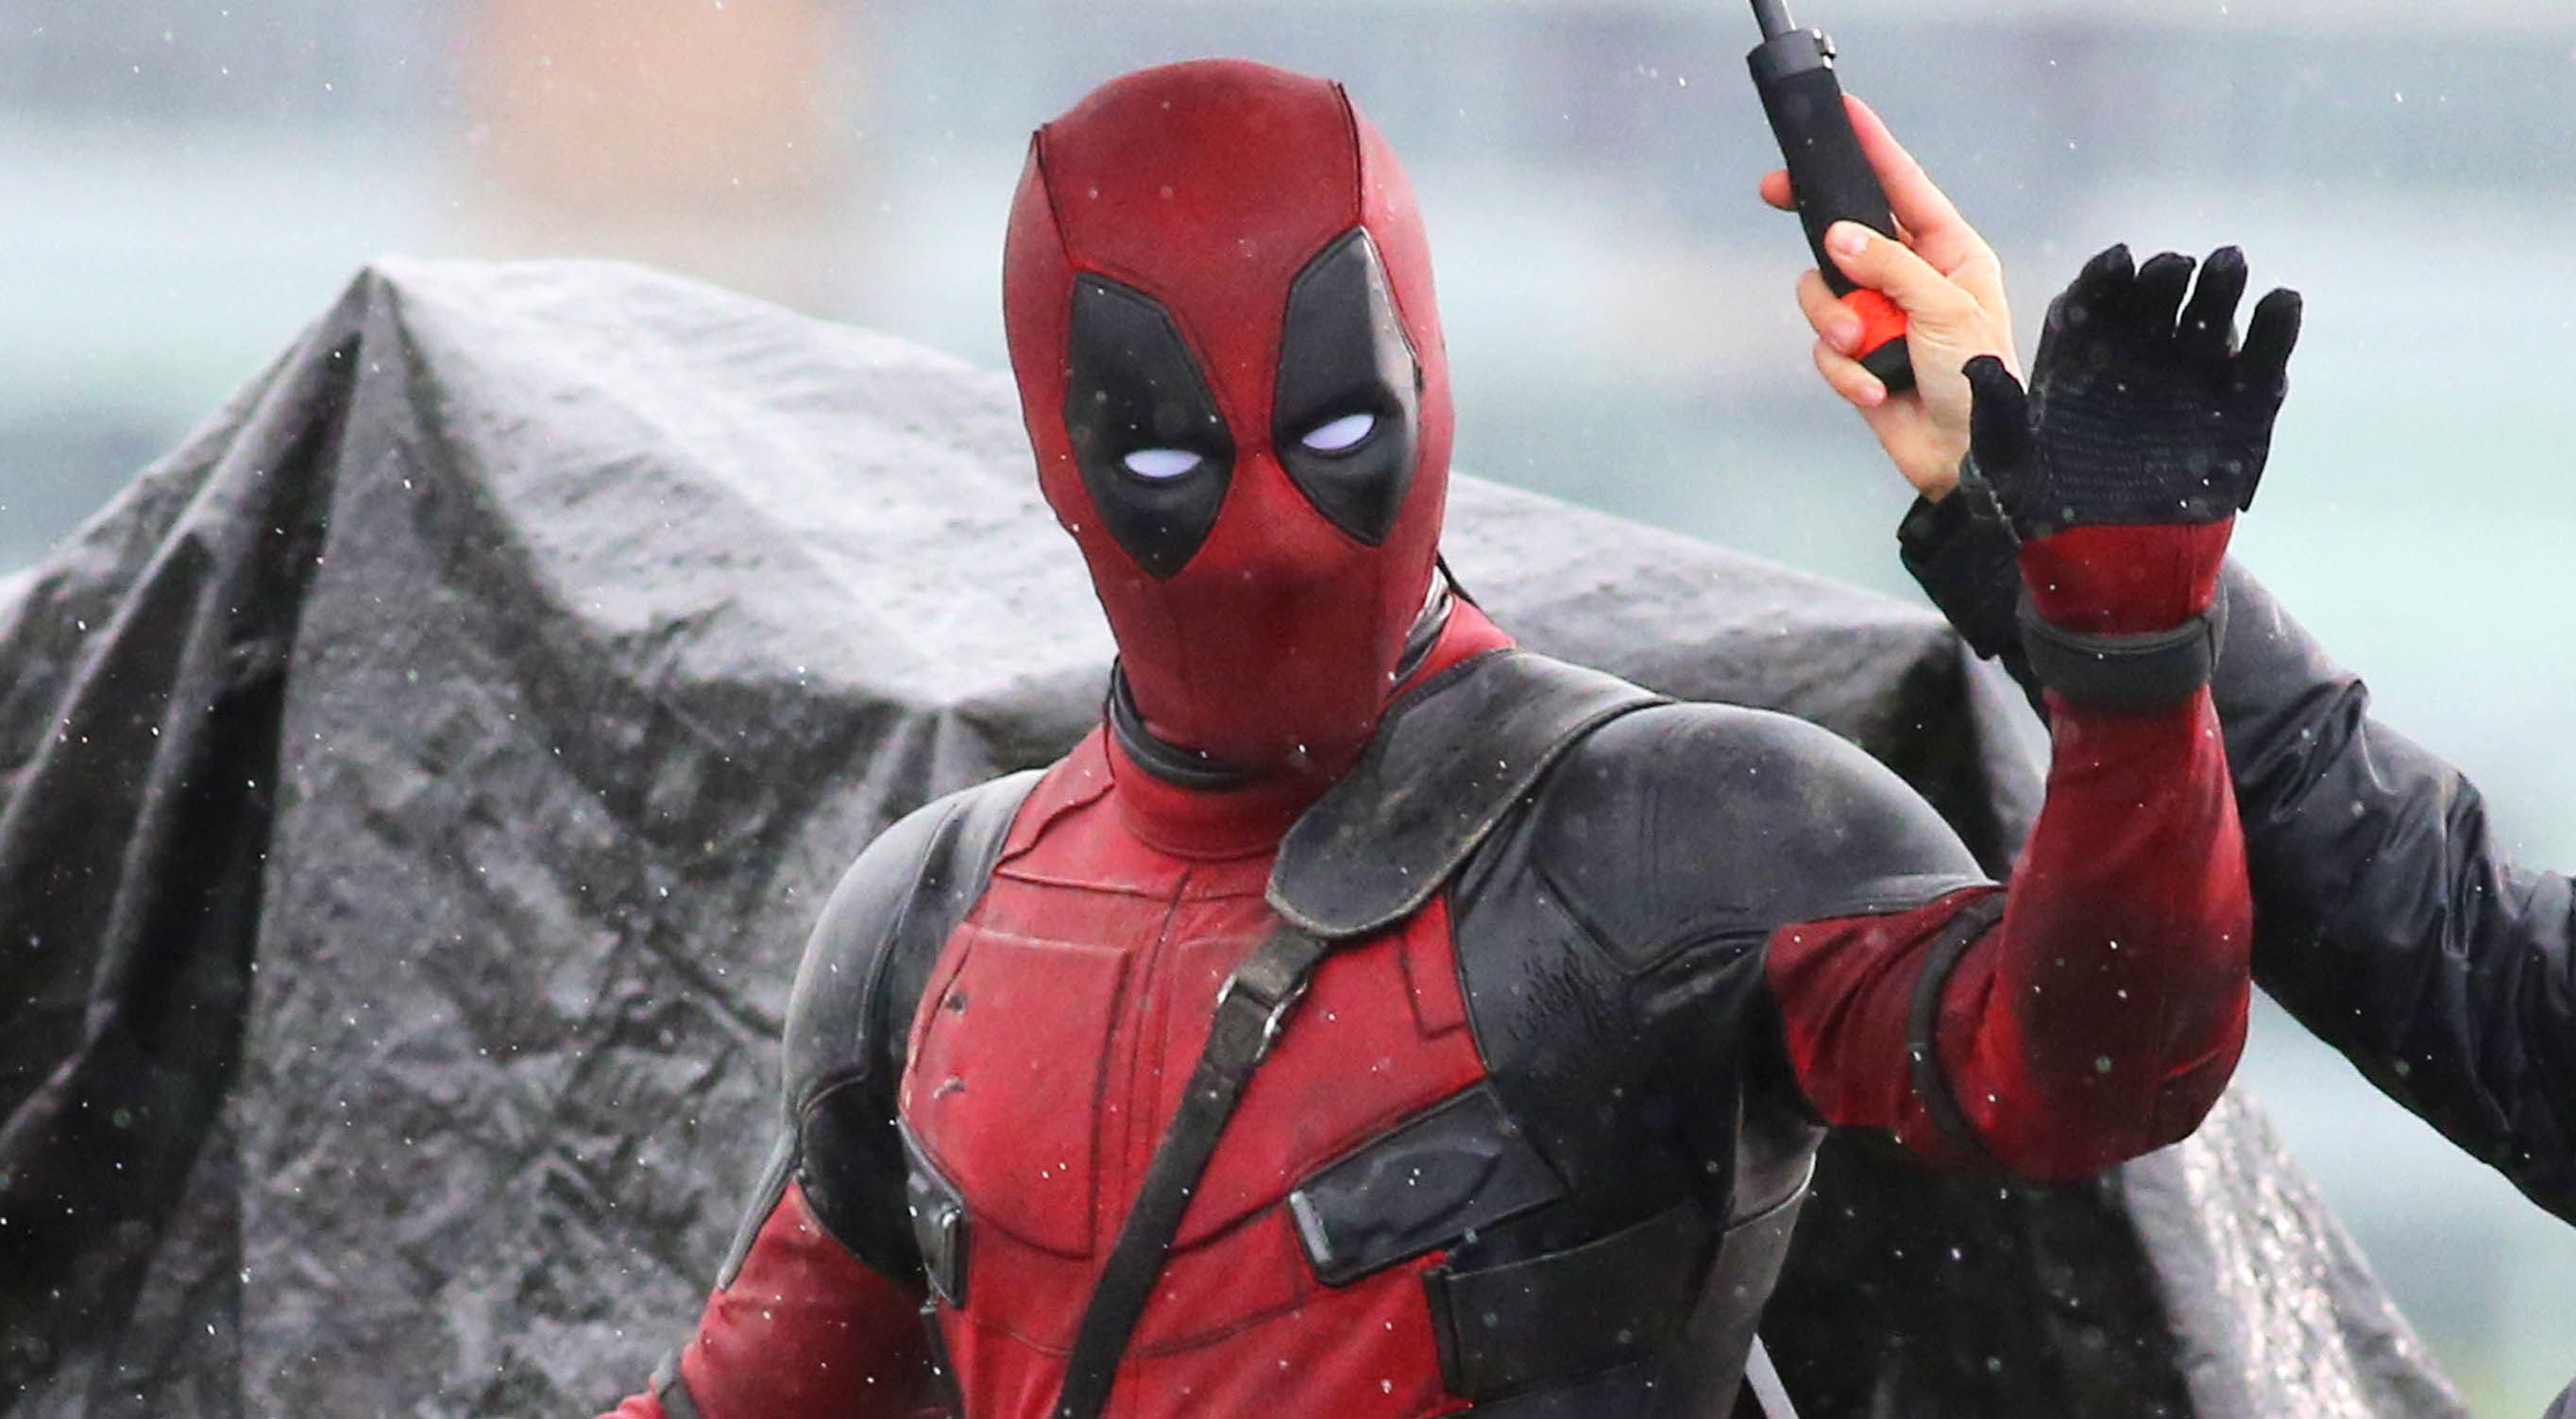 La 20th Century Fox ha finalmente reso online il primo trailer rigorosamente vietato ai minori di Deadpool il mercenario psicopatico della Marvel. Nel trailer ci vengono mostrate per lo più […]